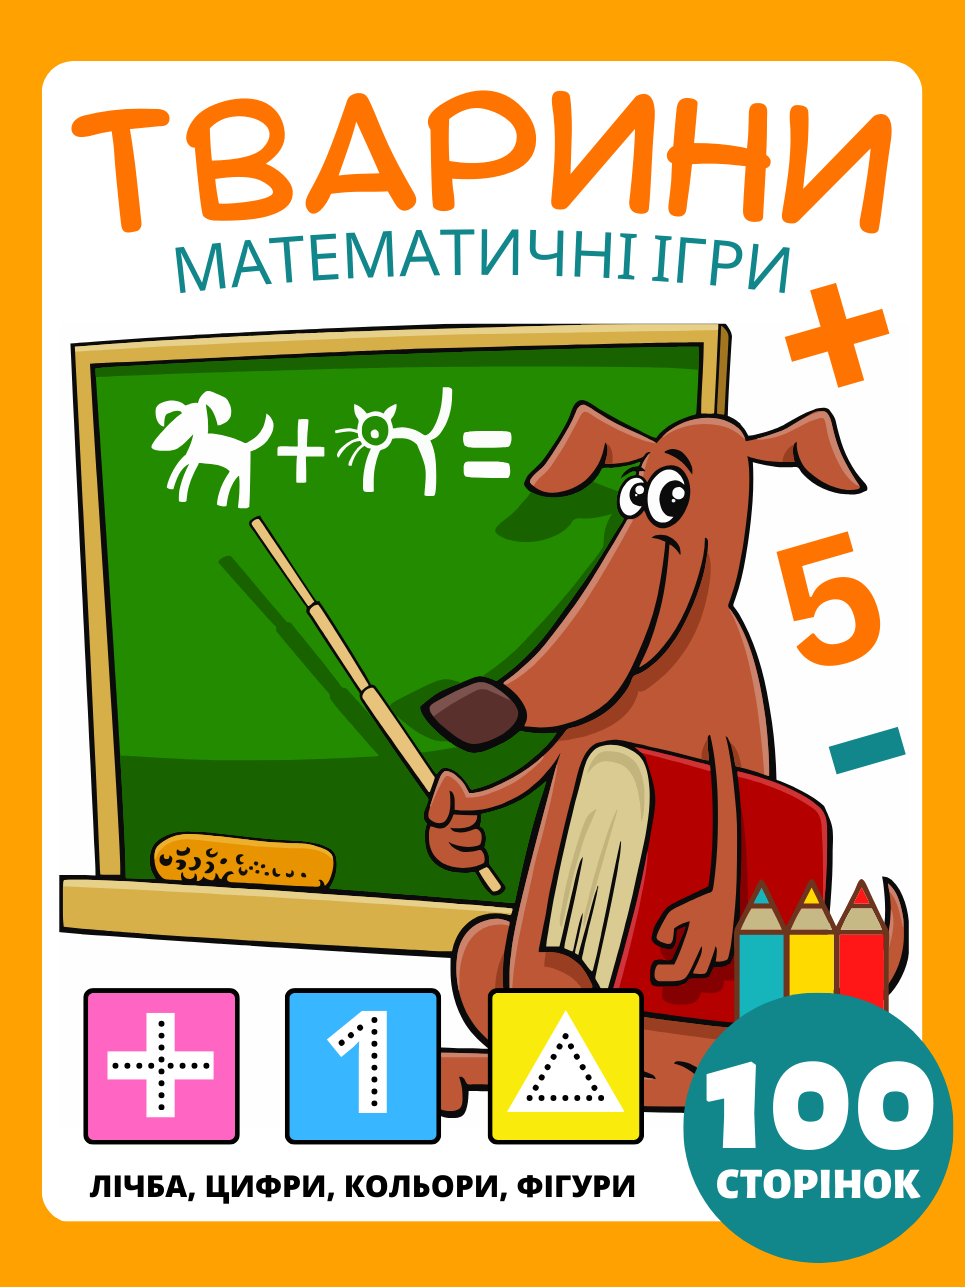 Математичні ігри для дітей віком 4-8 років Книга з завданнями на тему тварин